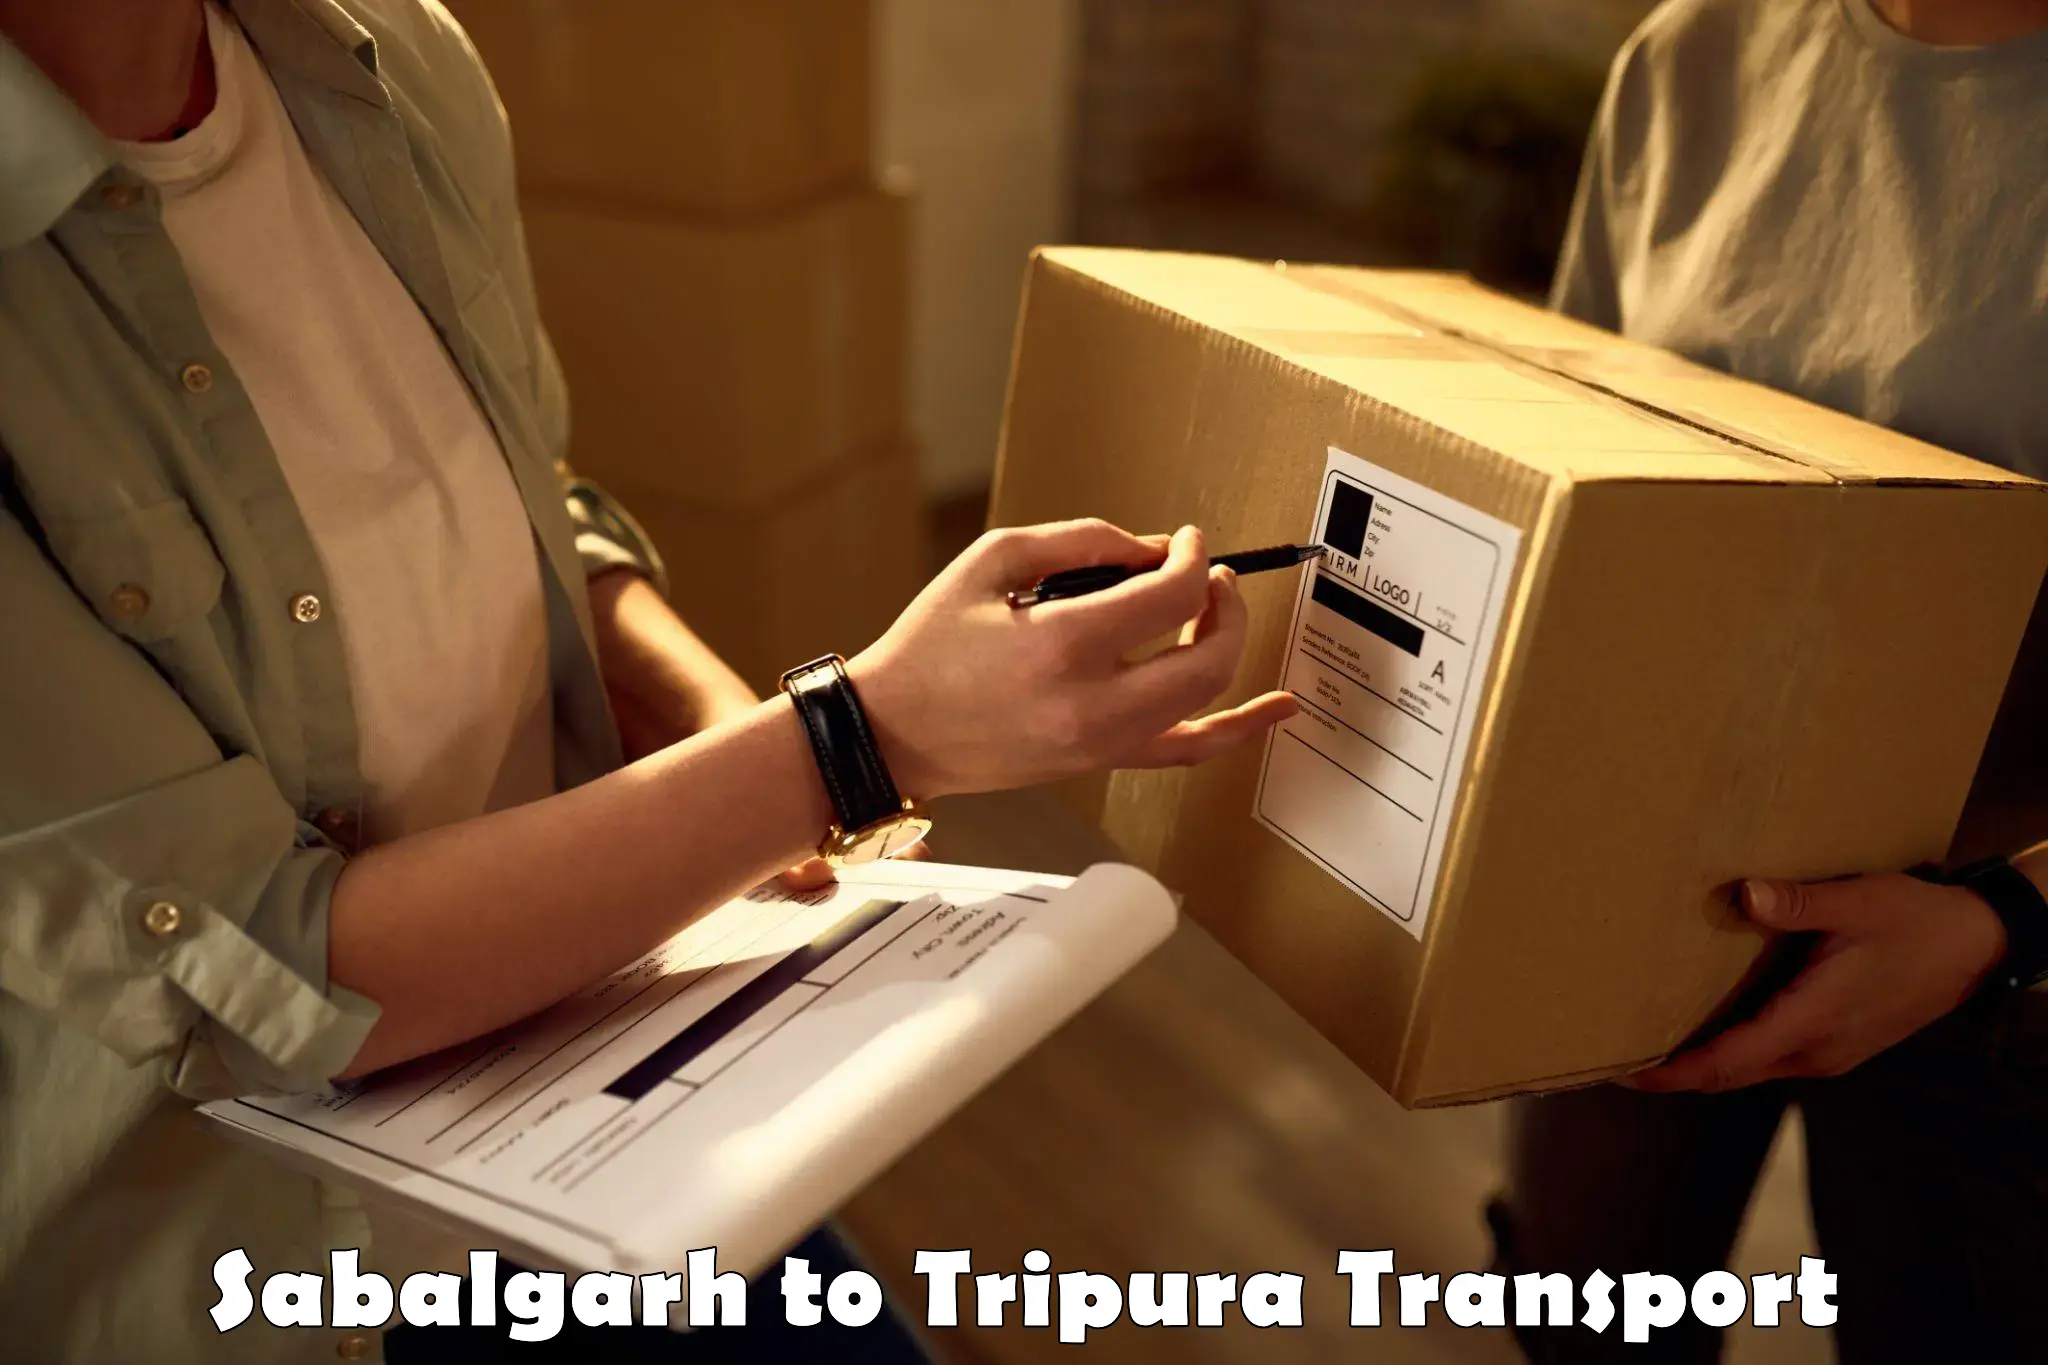 Delivery service Sabalgarh to Kailashahar